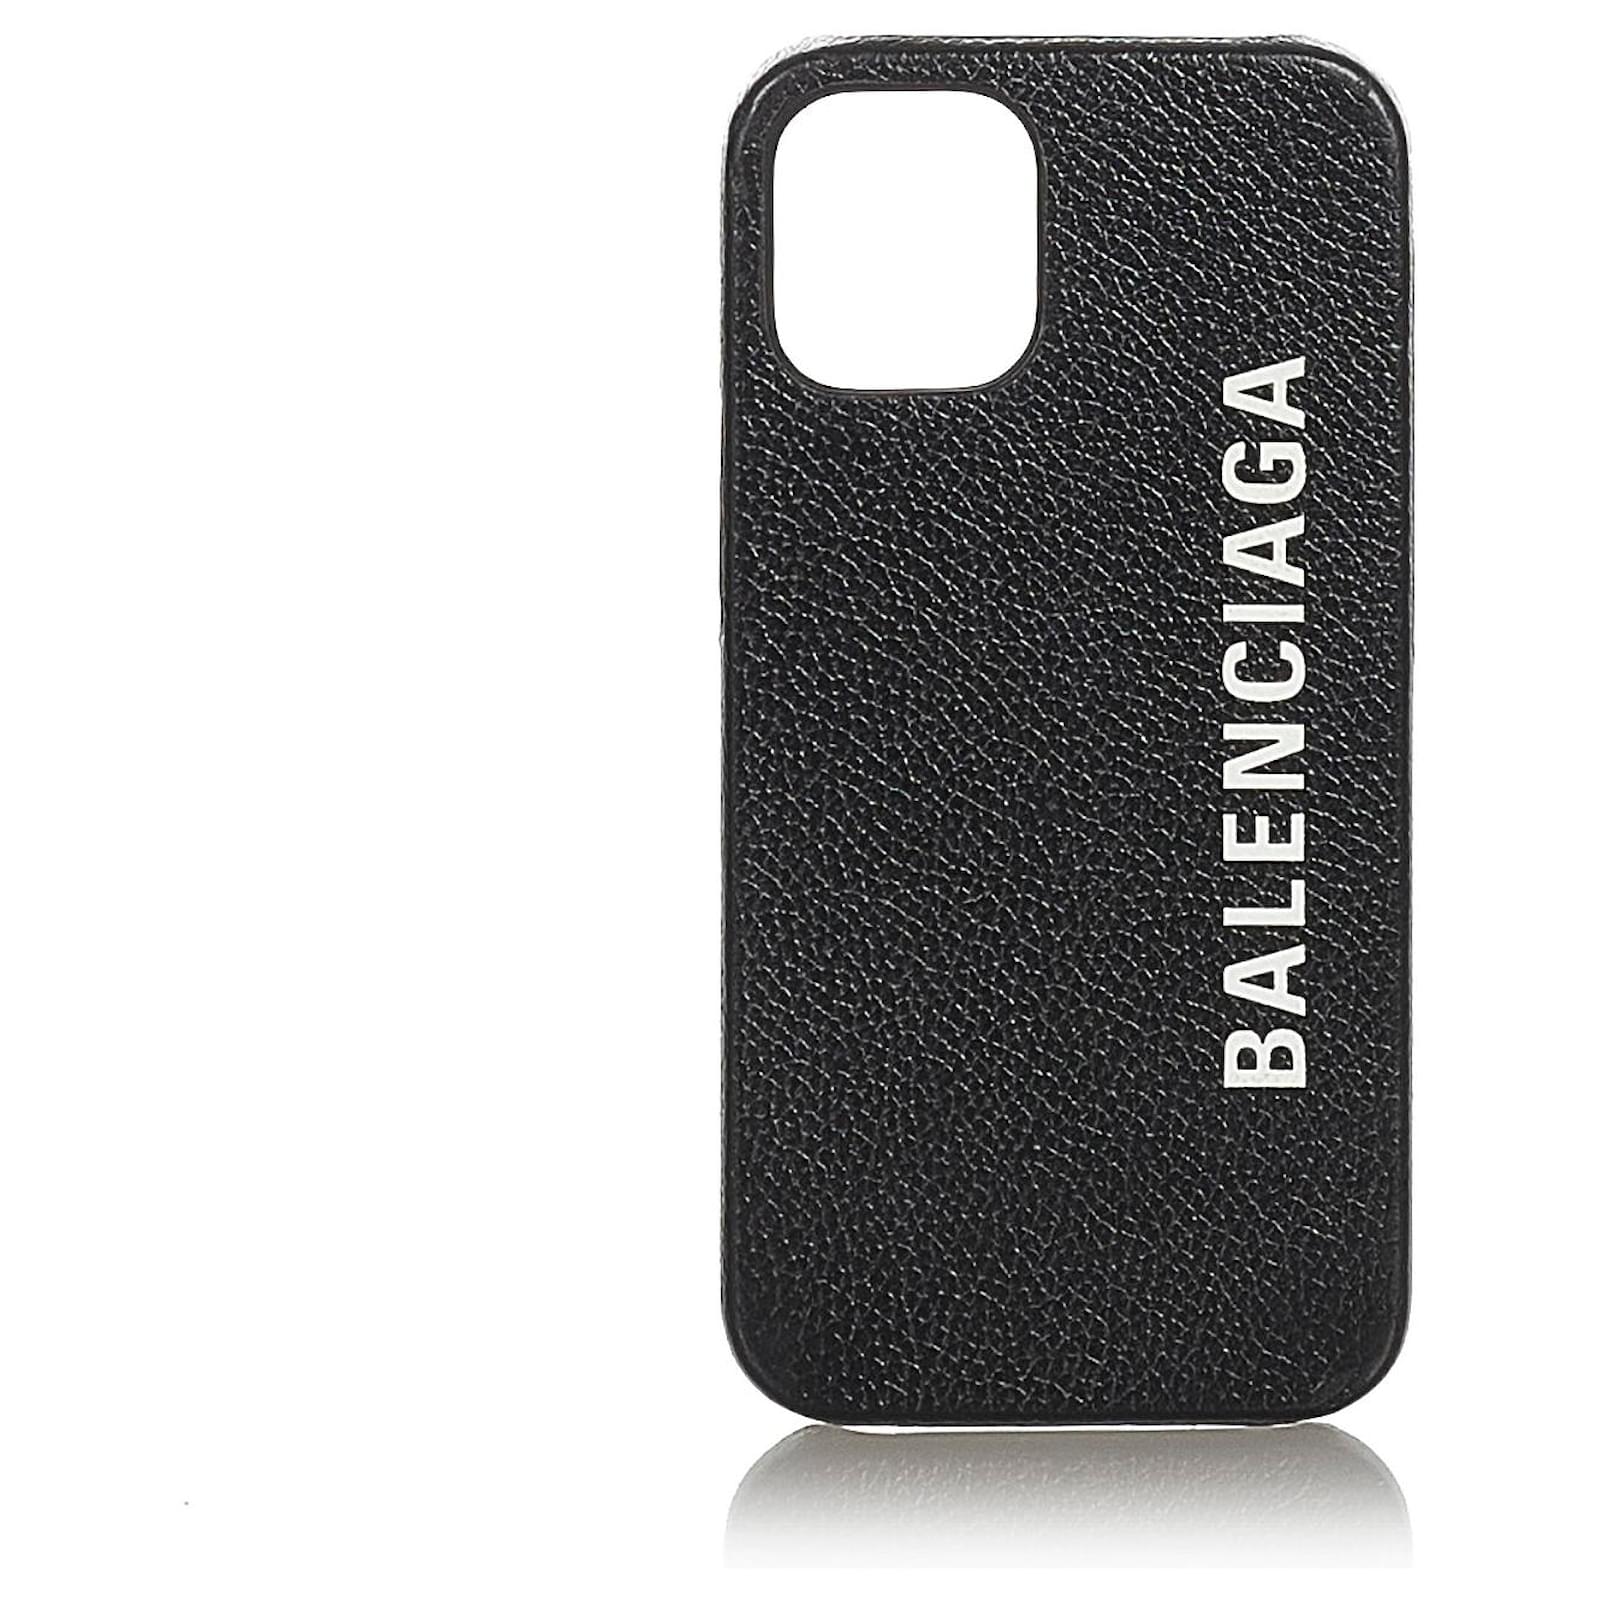 Balenciaga phone case  QEANDM  Cell Phone Accessories  Phone Cases